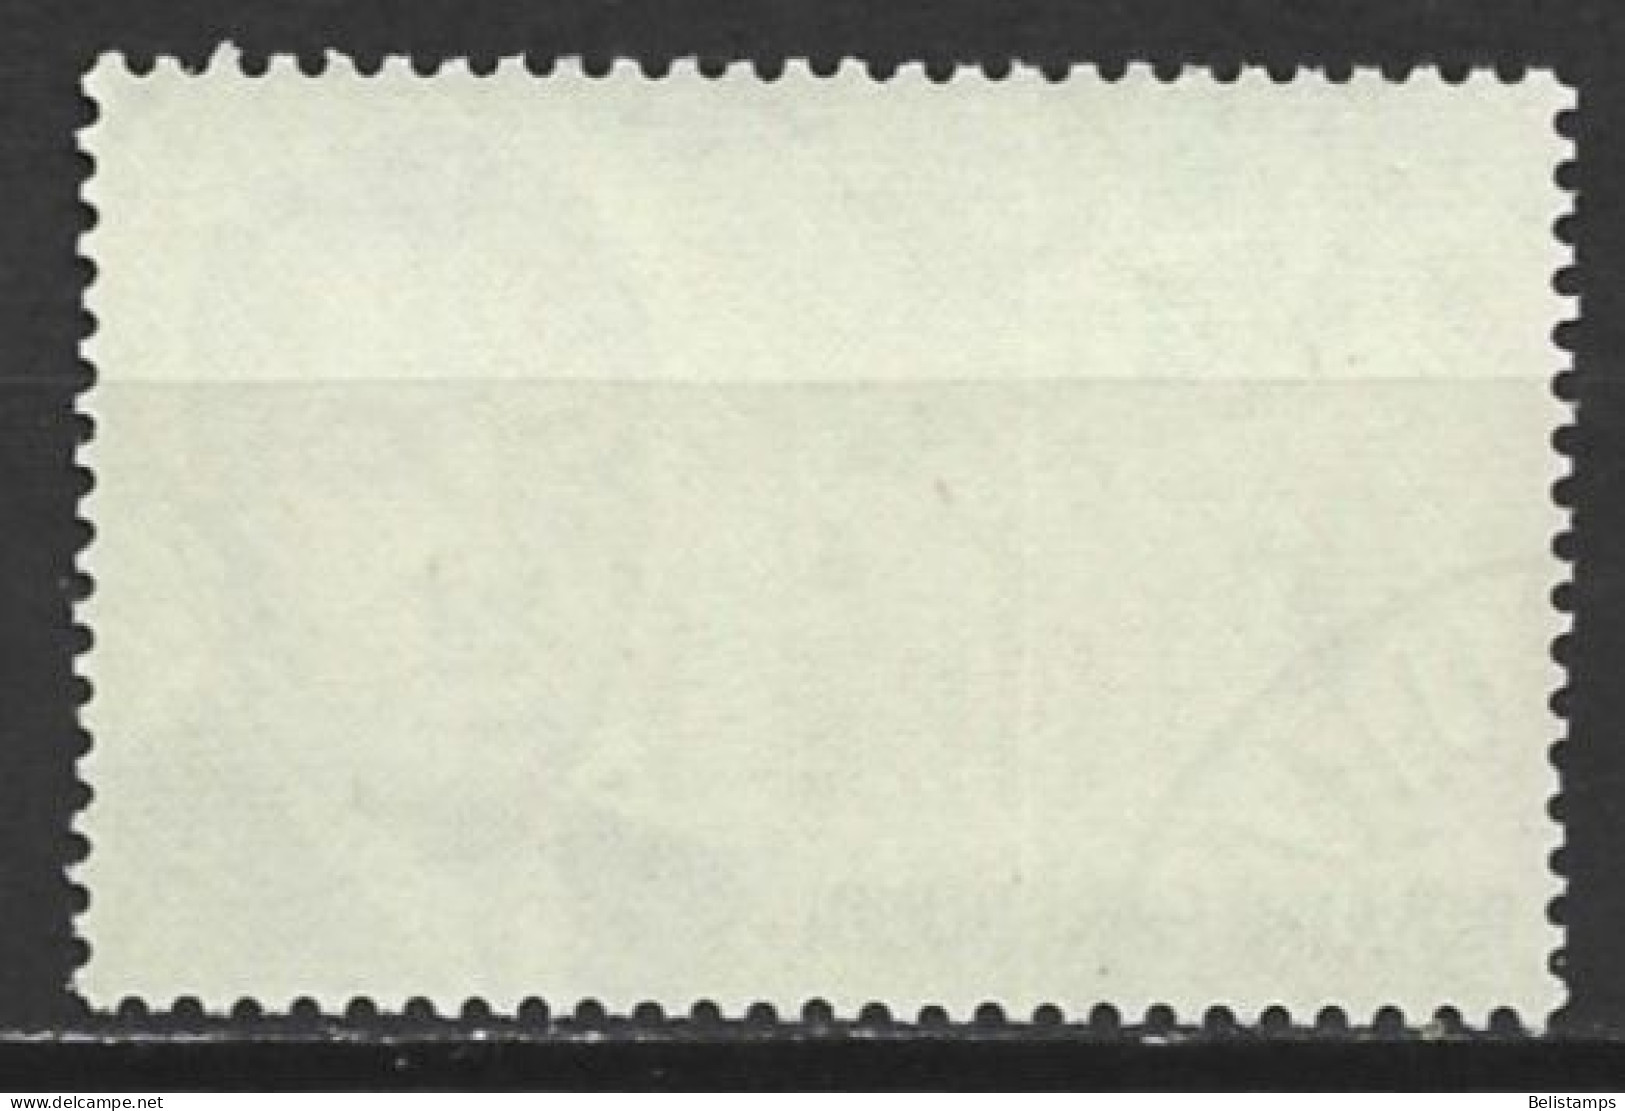 Burundi 1963. Scott #B3 (U) Prince Louis Rwagasore And Memorial Monument - Used Stamps